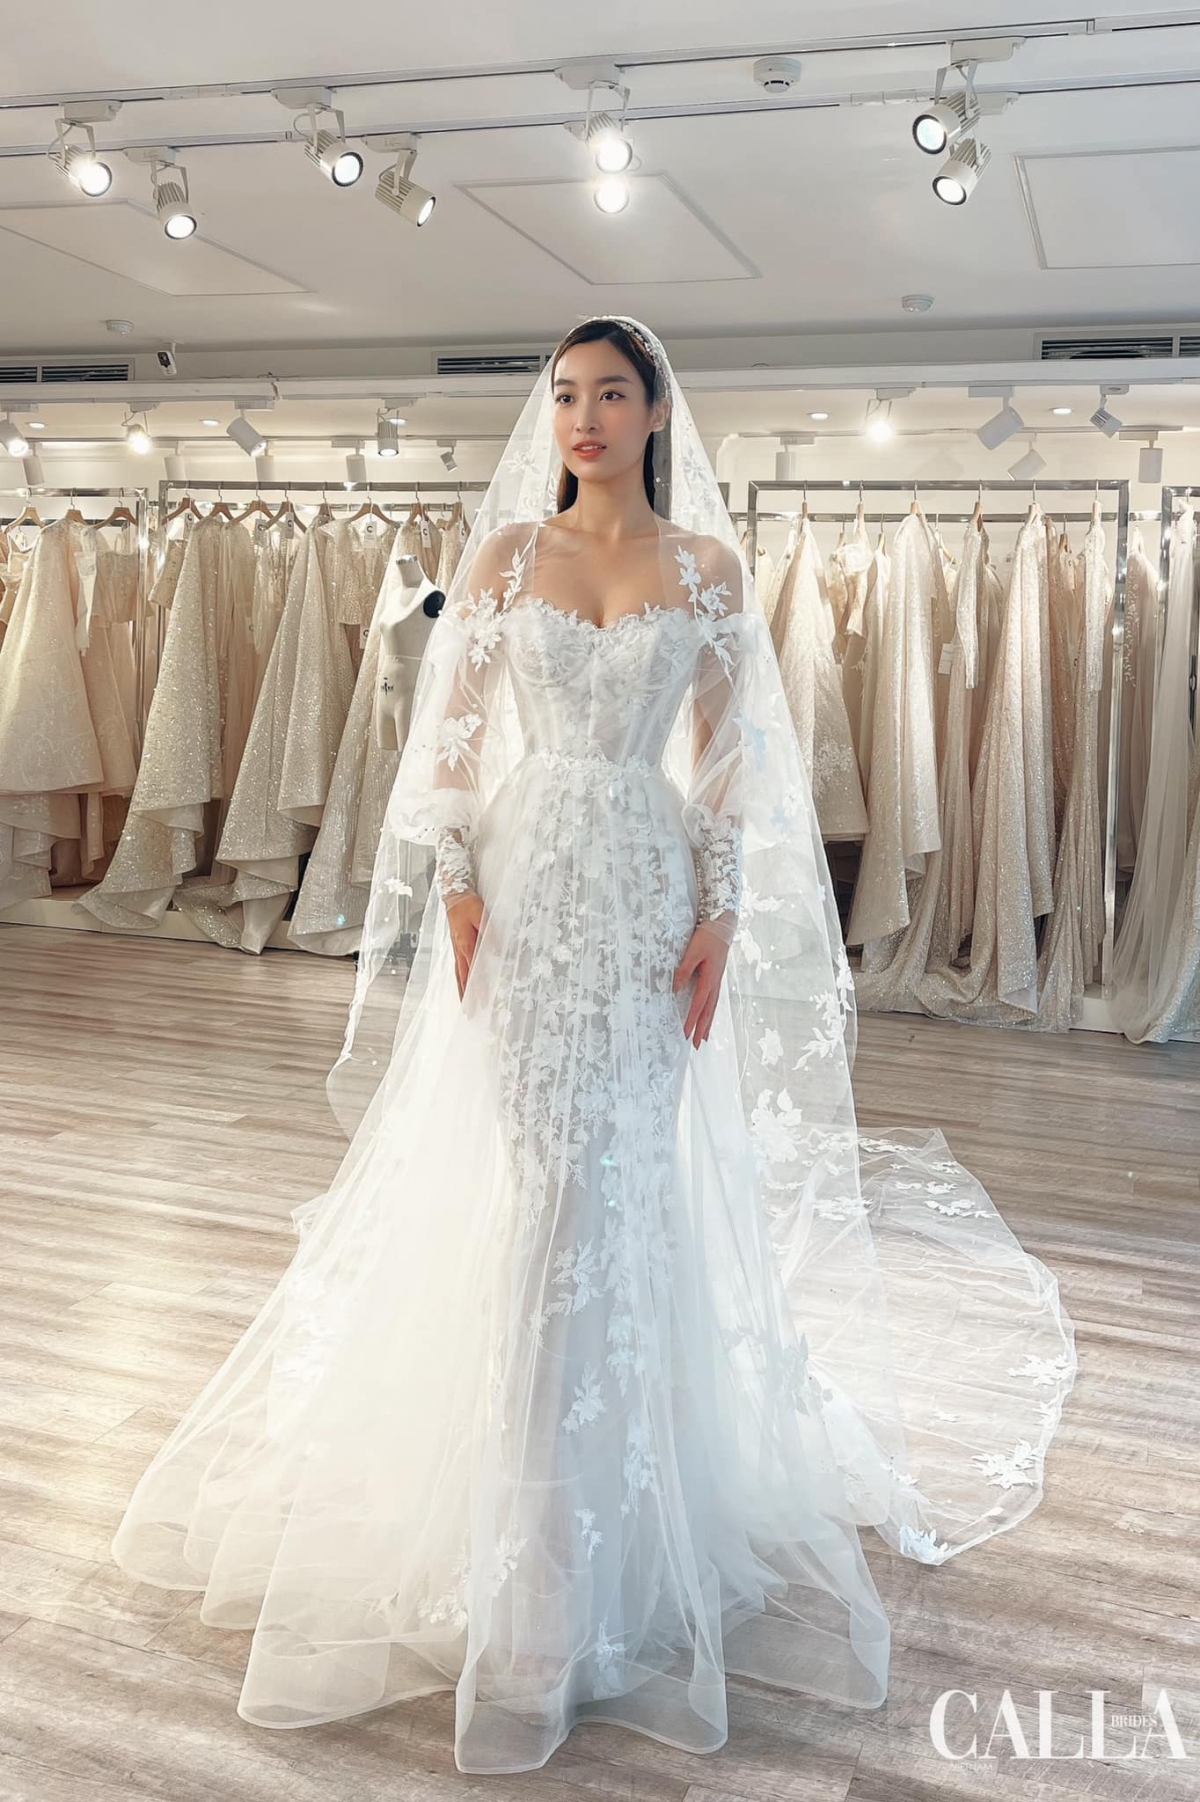 Cận cảnh bộ sưu tập váy cưới 'cô dâu tháng 10' Đỗ Mỹ Linh thử cho ngày trọng đại